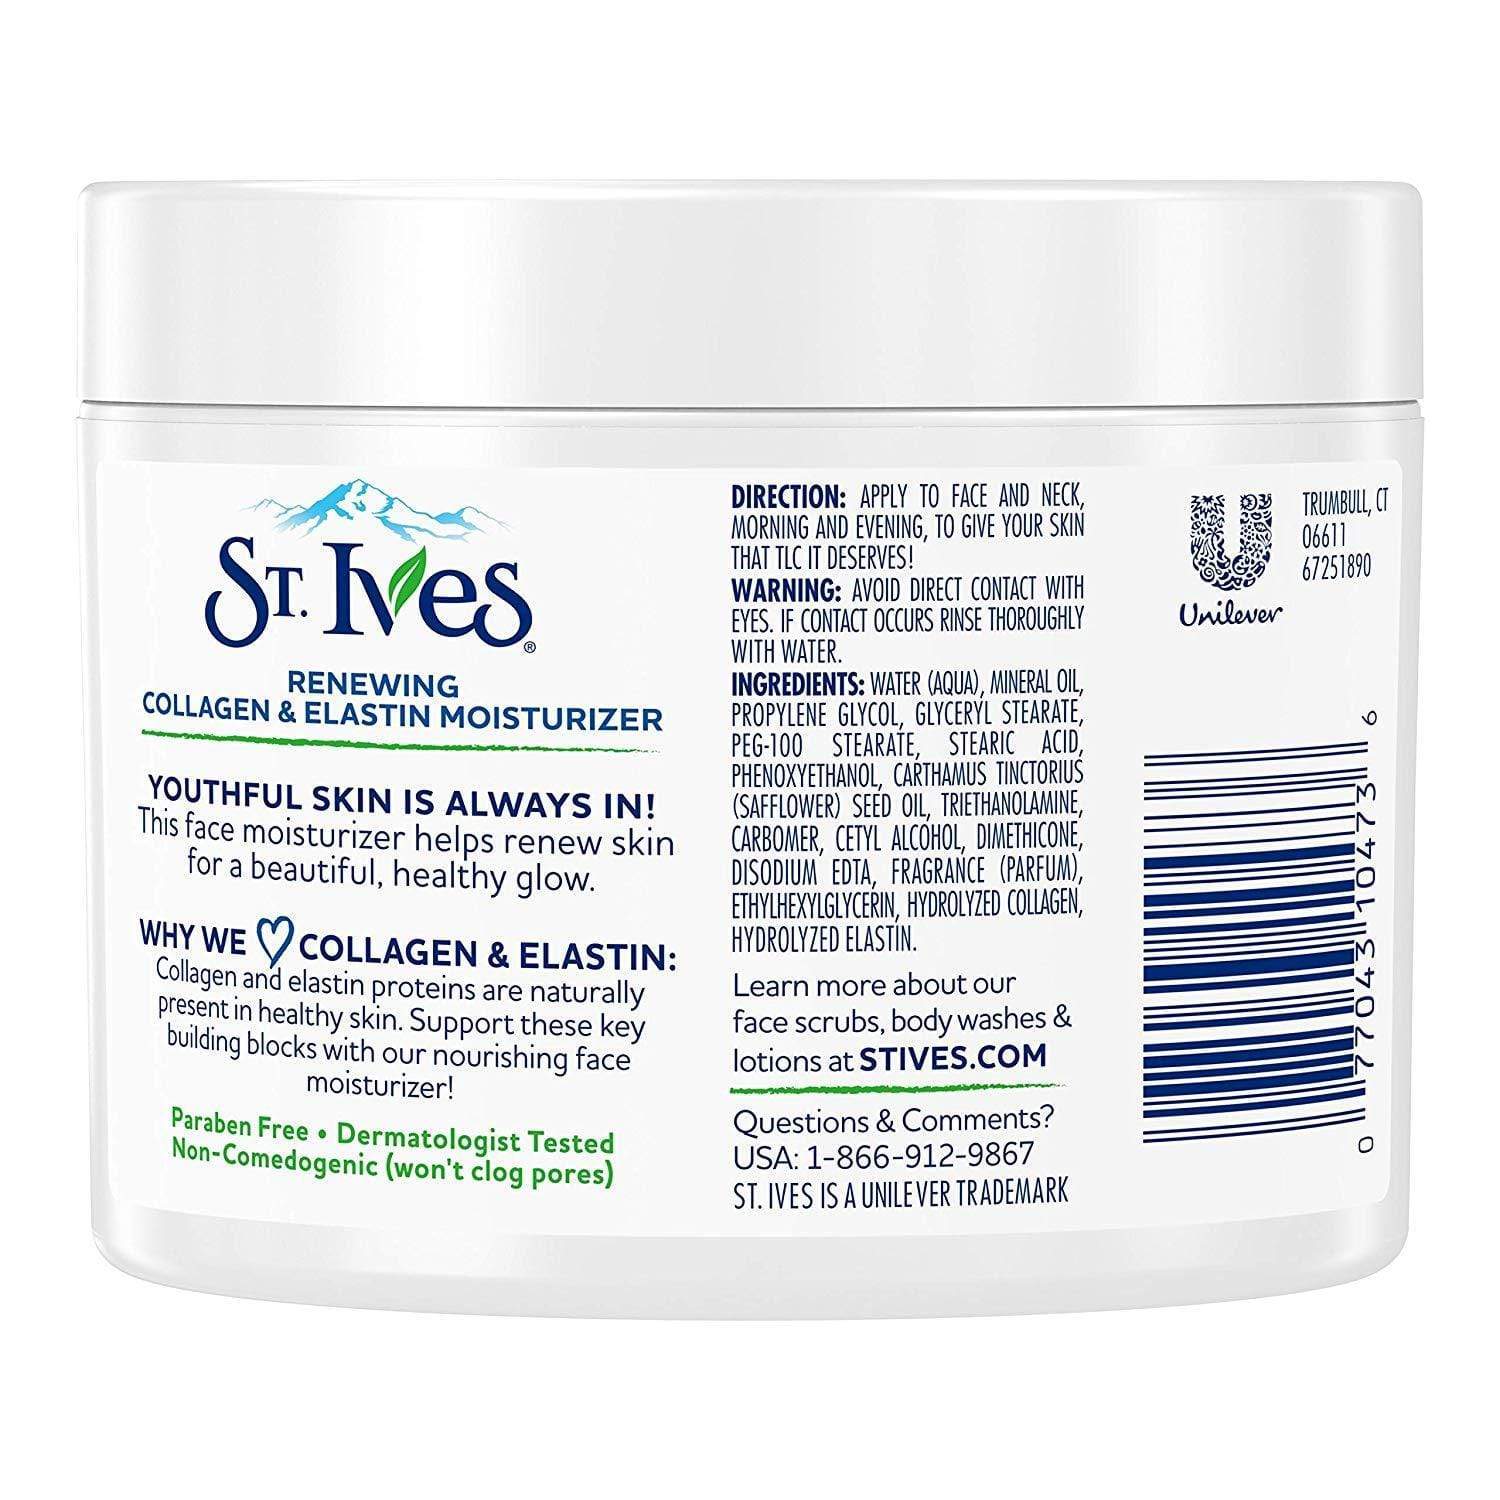 St. Ives Facial Moisturizer for Dry Skin, Collagen Elastin Minoustore